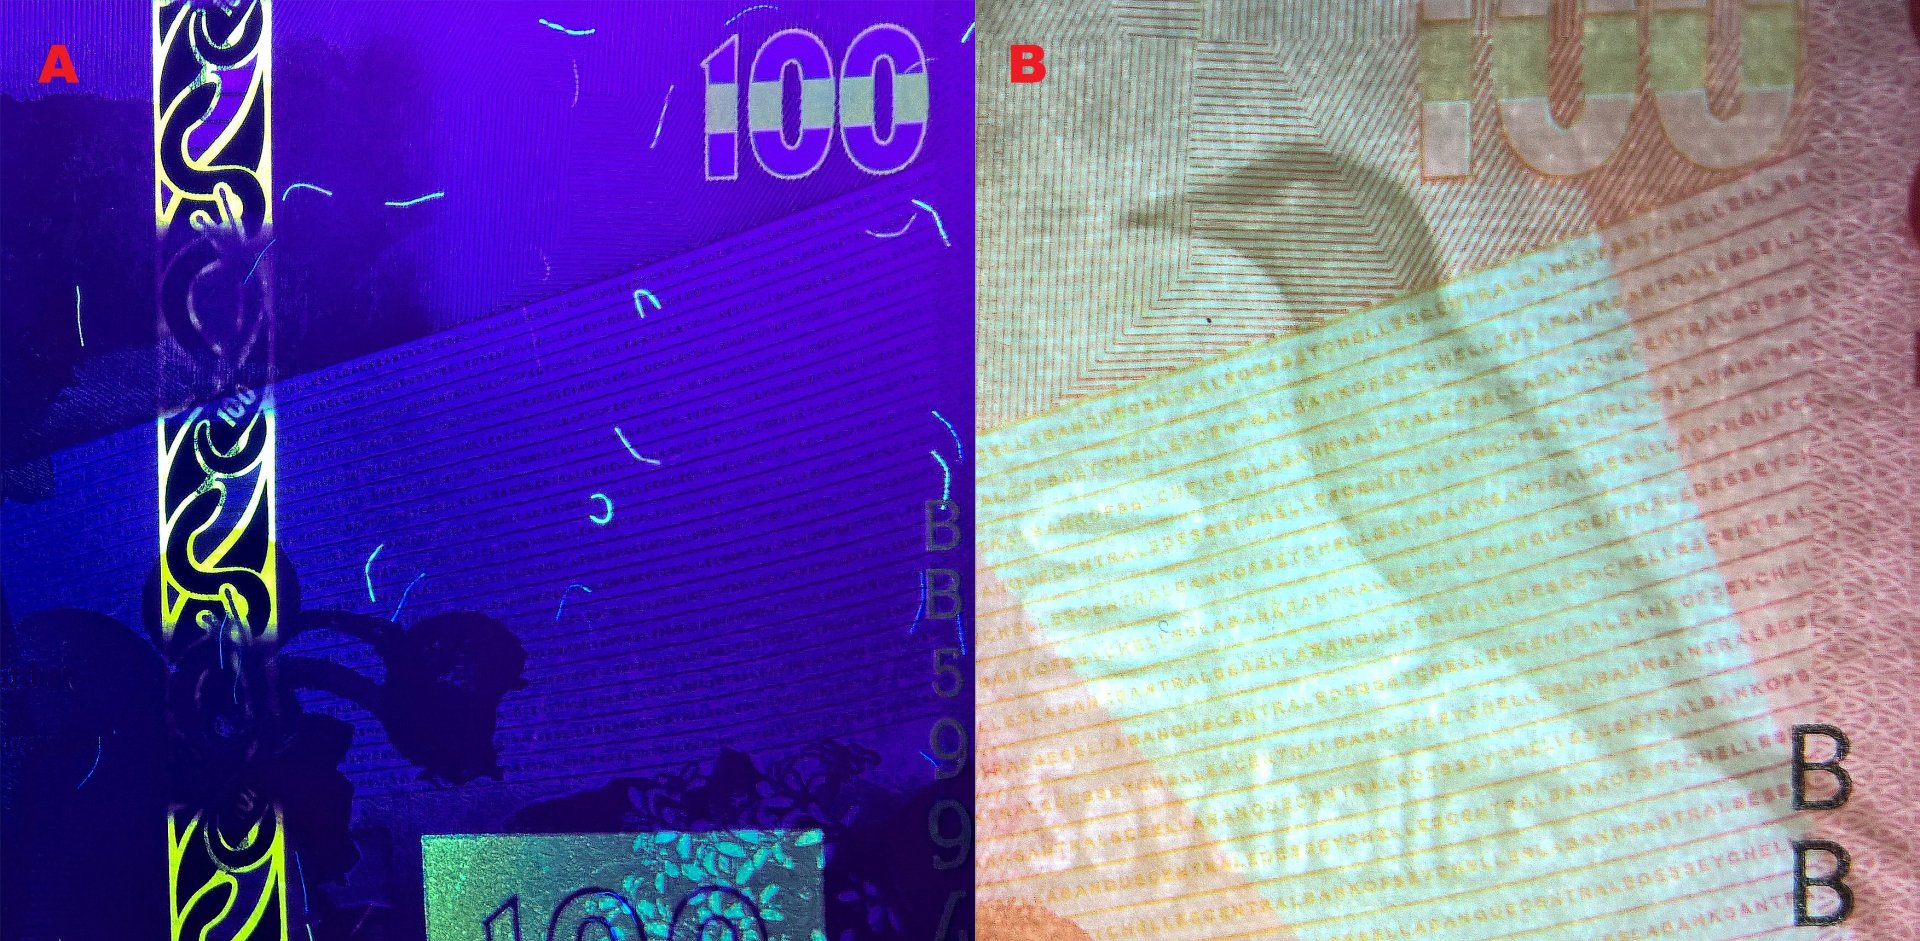 Obr. 6 A) Elementy averzu bankovky pod UV nasvícením – bezpečnostní okénkový proužek, nominál „100“, část UV pozitivního pole vpravo a difúzně vlákna B) Nesouhlasný figurální vodoznak lejskovce seychelského, nominálu „100“ a opisu „Seychelles“.